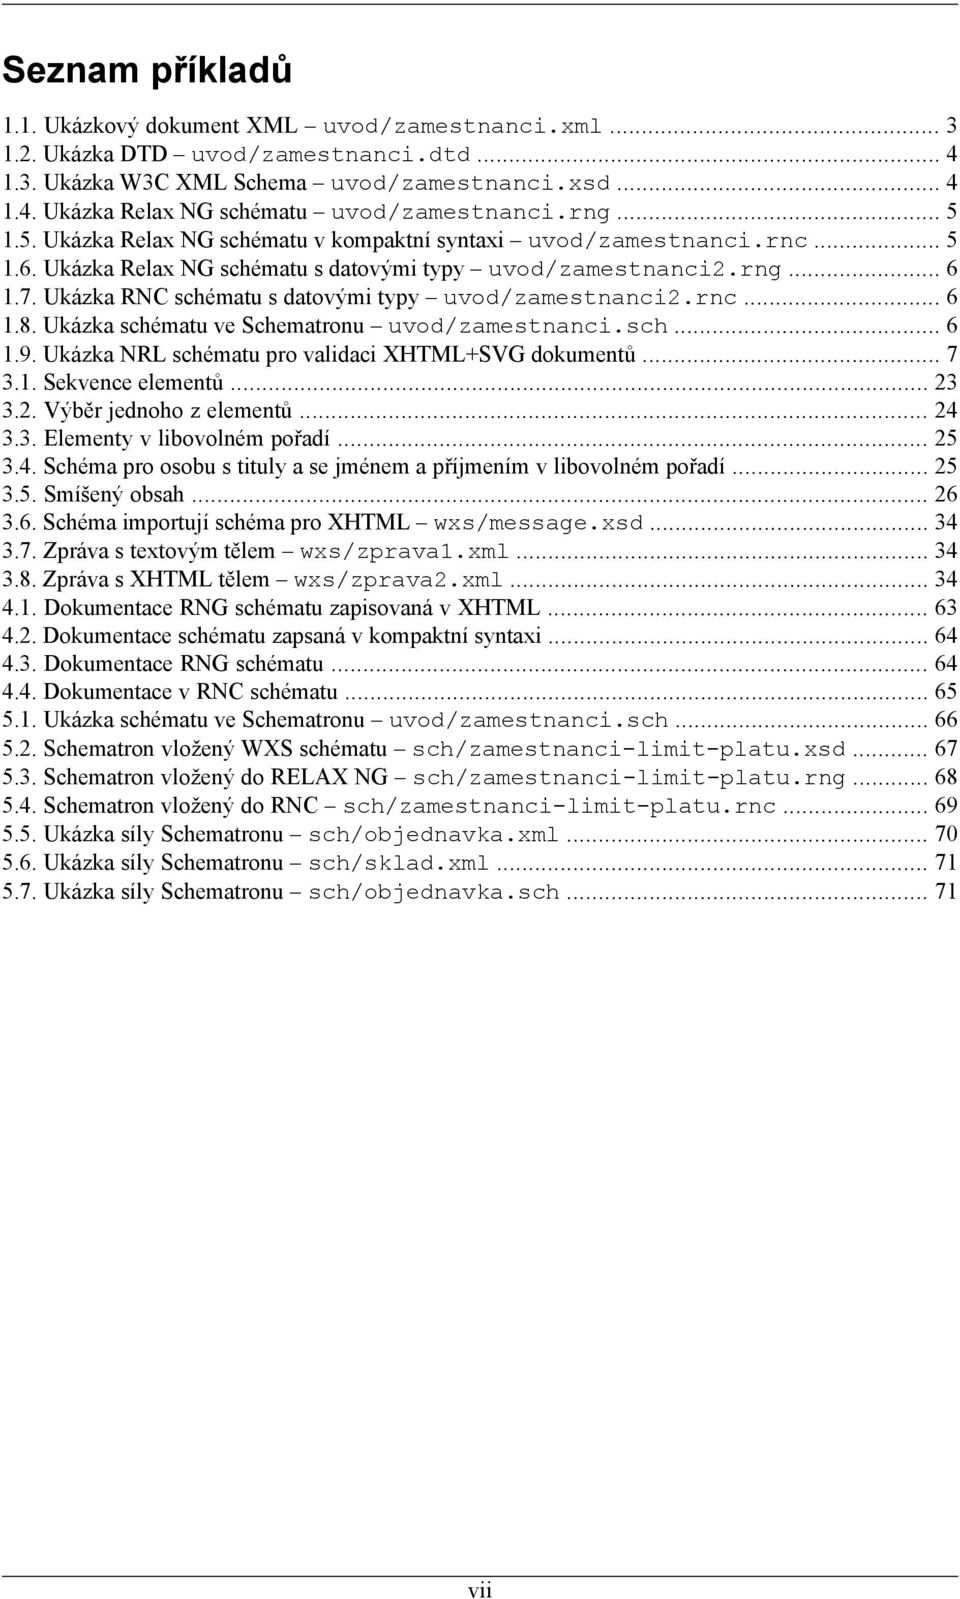 Ukázka RNC schématu s datovými typy uvod/zamestnanci2.rnc... 6 1.8. Ukázka schématu ve Schematronu uvod/zamestnanci.sch... 6 1.9. Ukázka NRL schématu pro validaci XHTML+SVG dokumentů... 7 3.1. Sekvence elementů.